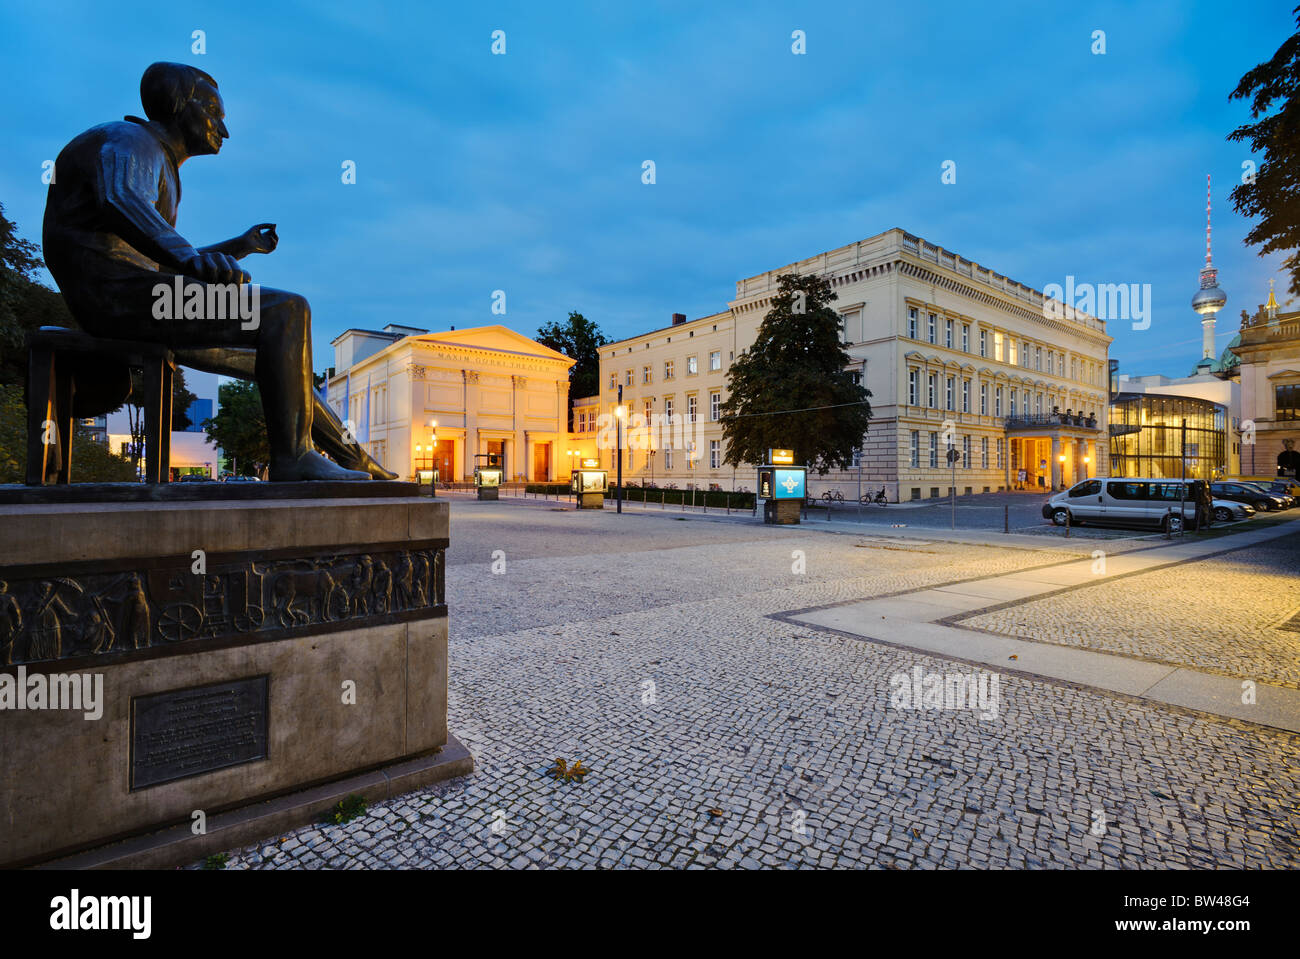 Heinrich Heine-Denkmal vor dem Maxim Gorki Theater und Palais bin Festungsgraben Palast, Berlin, Deutschland, Europa Stockfoto